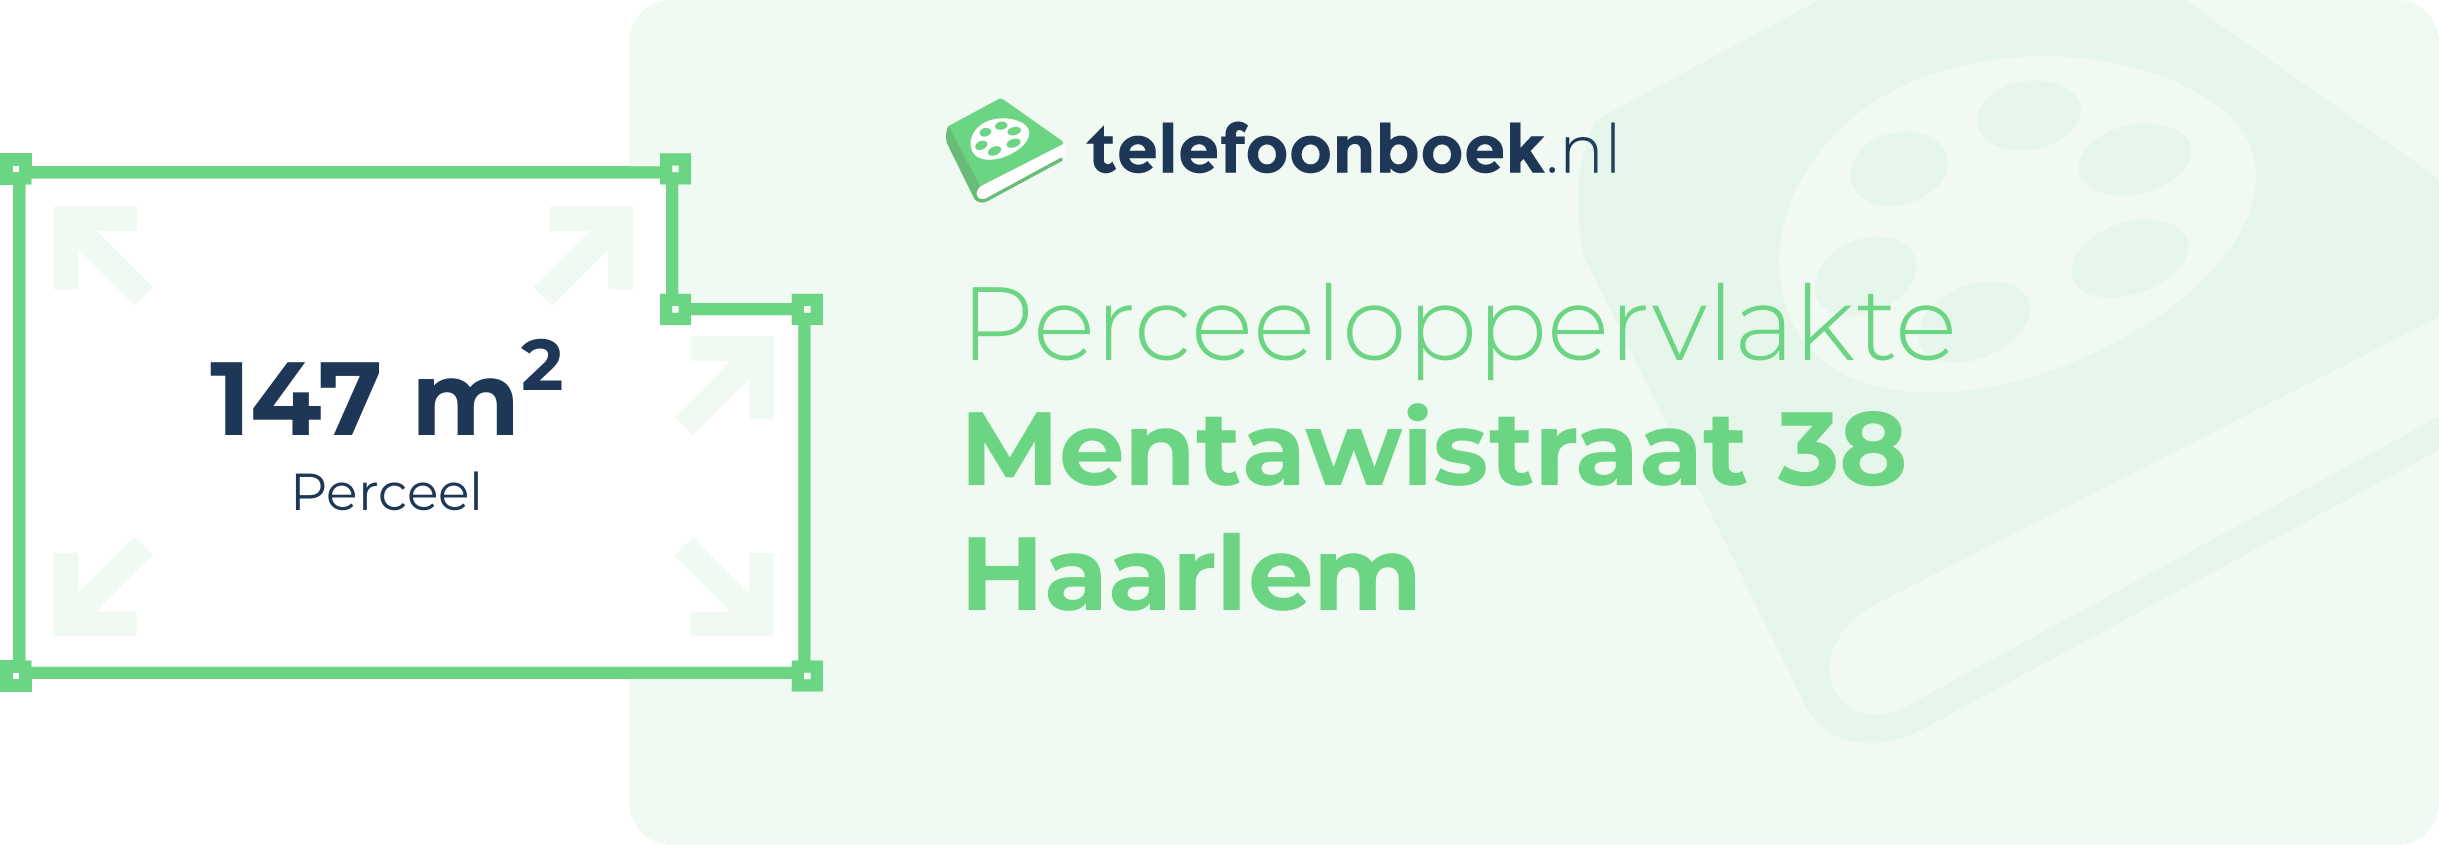 Perceeloppervlakte Mentawistraat 38 Haarlem